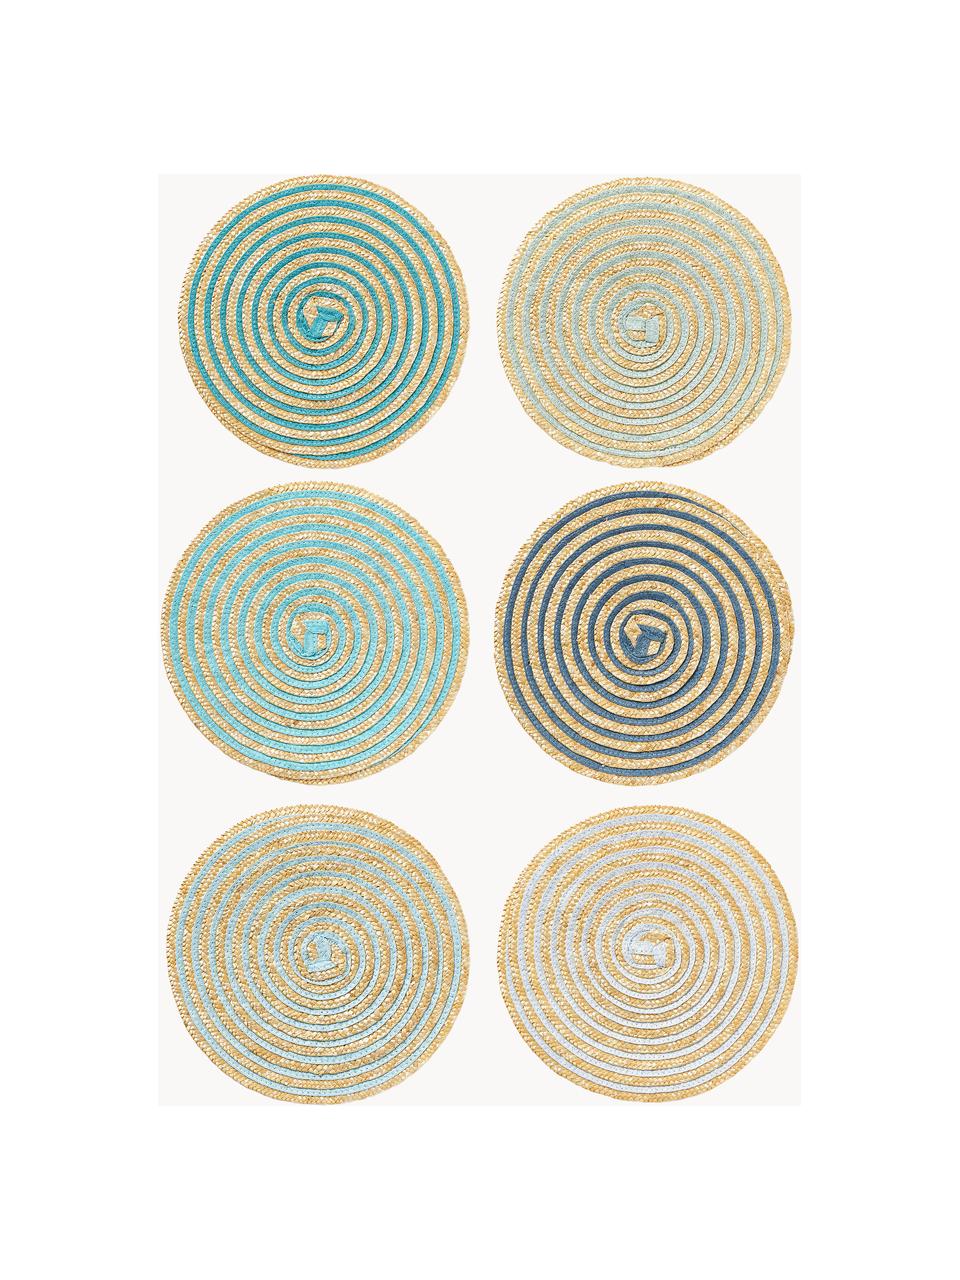 Súprava okrúhleho stolového prestierania z lyka Baita, 6 dielov, Lykové vlákno, Béžová, tóny modrej a zelenej, Ø 39 cm